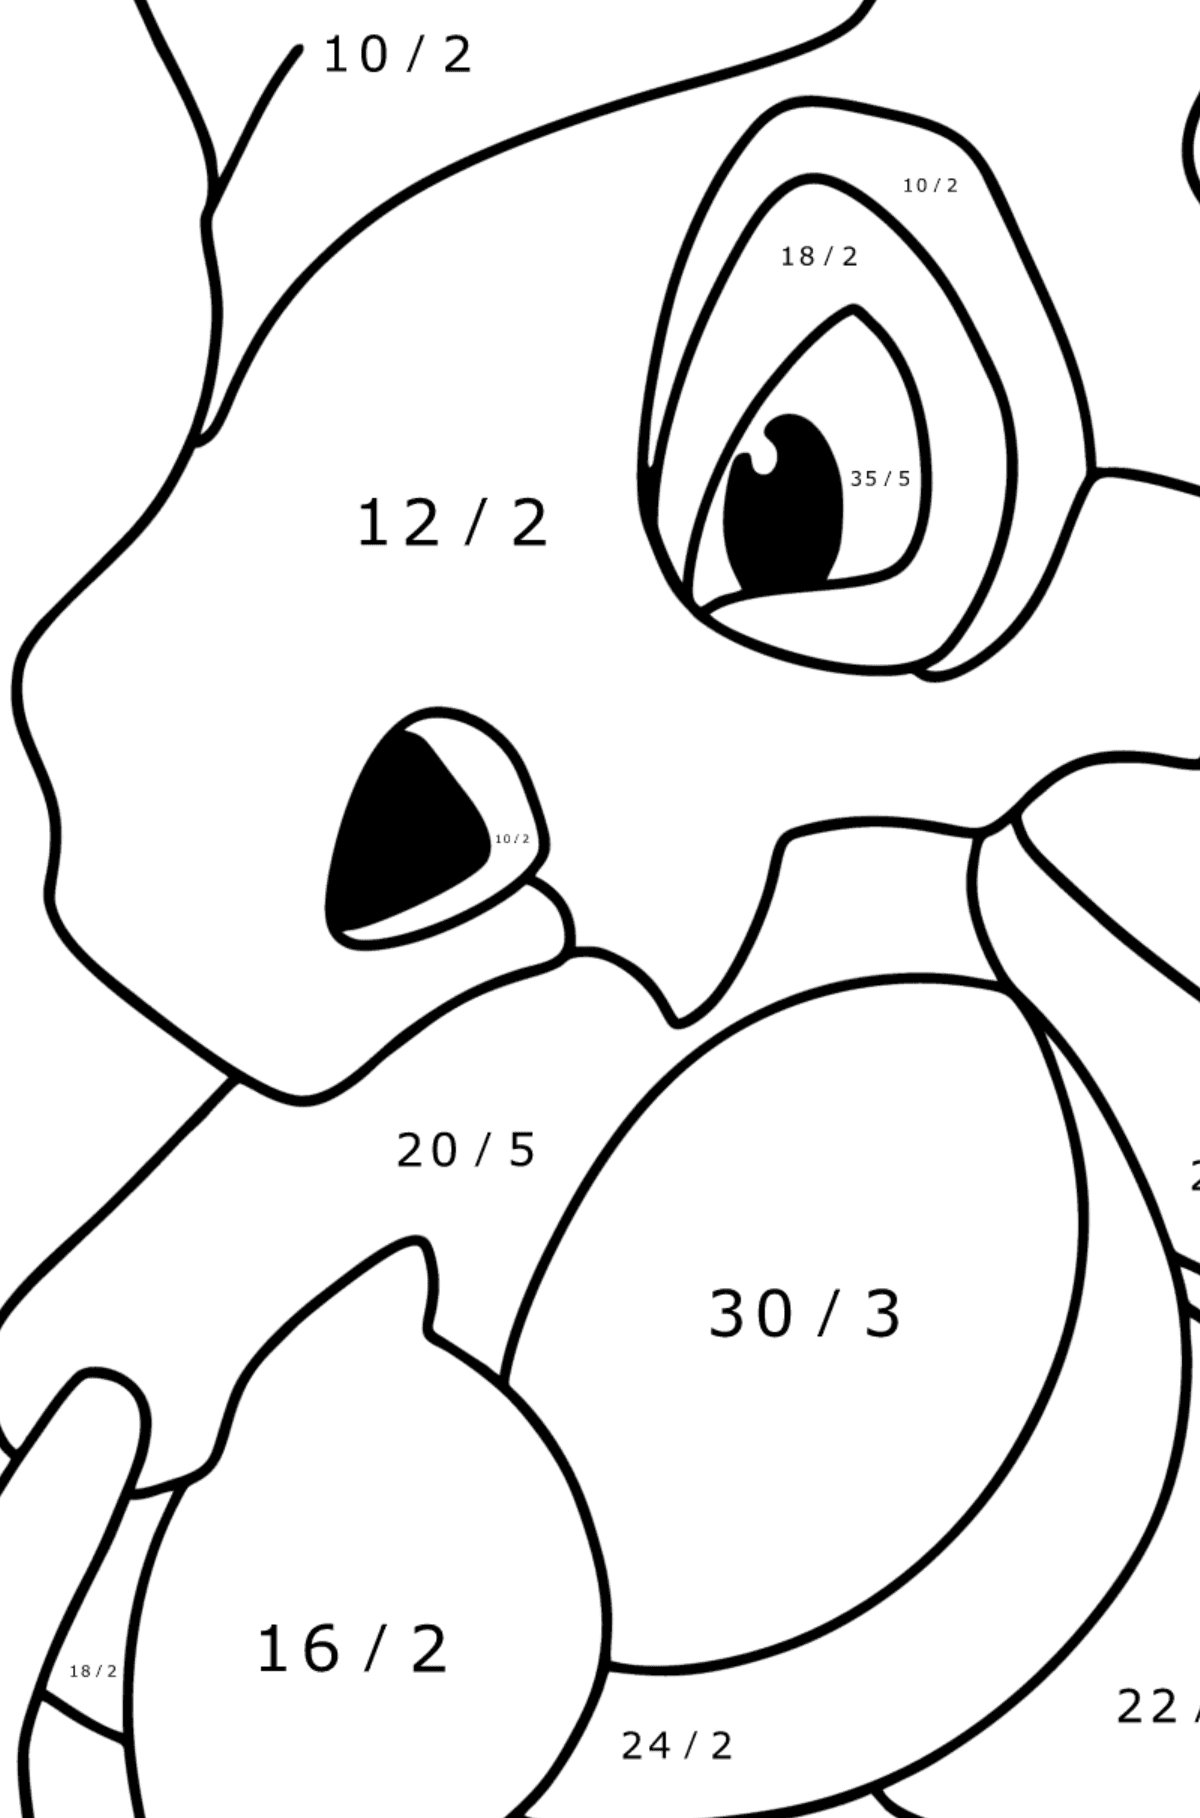 Mewarnai gambar Pokémon Go Cubone - Pewarnaan Matematika: Pembagian untuk anak-anak